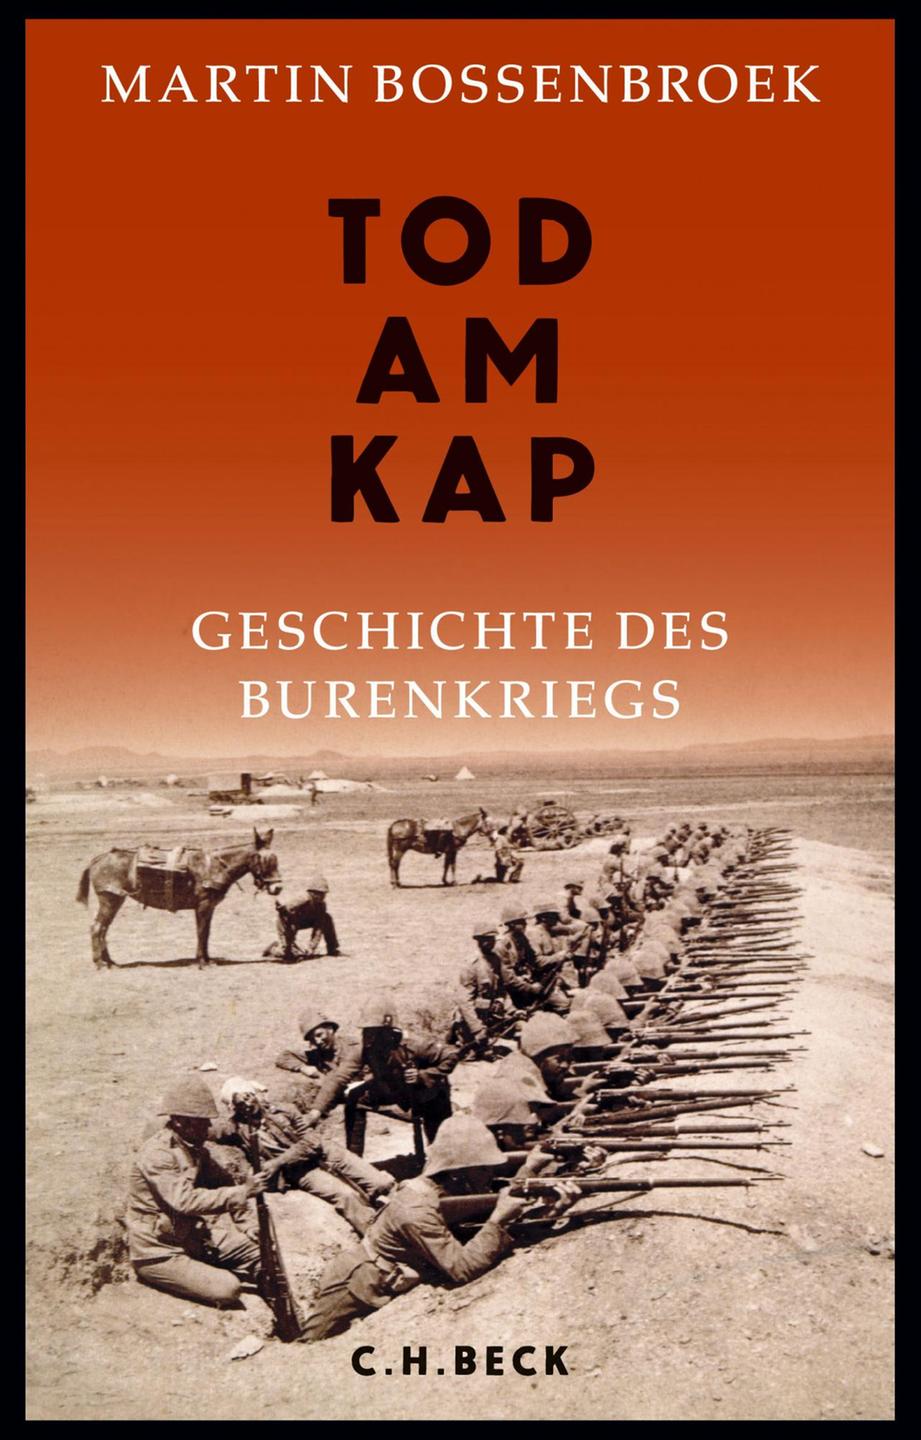 Cover - Martin Bossenbroek: "Tod am Kap"